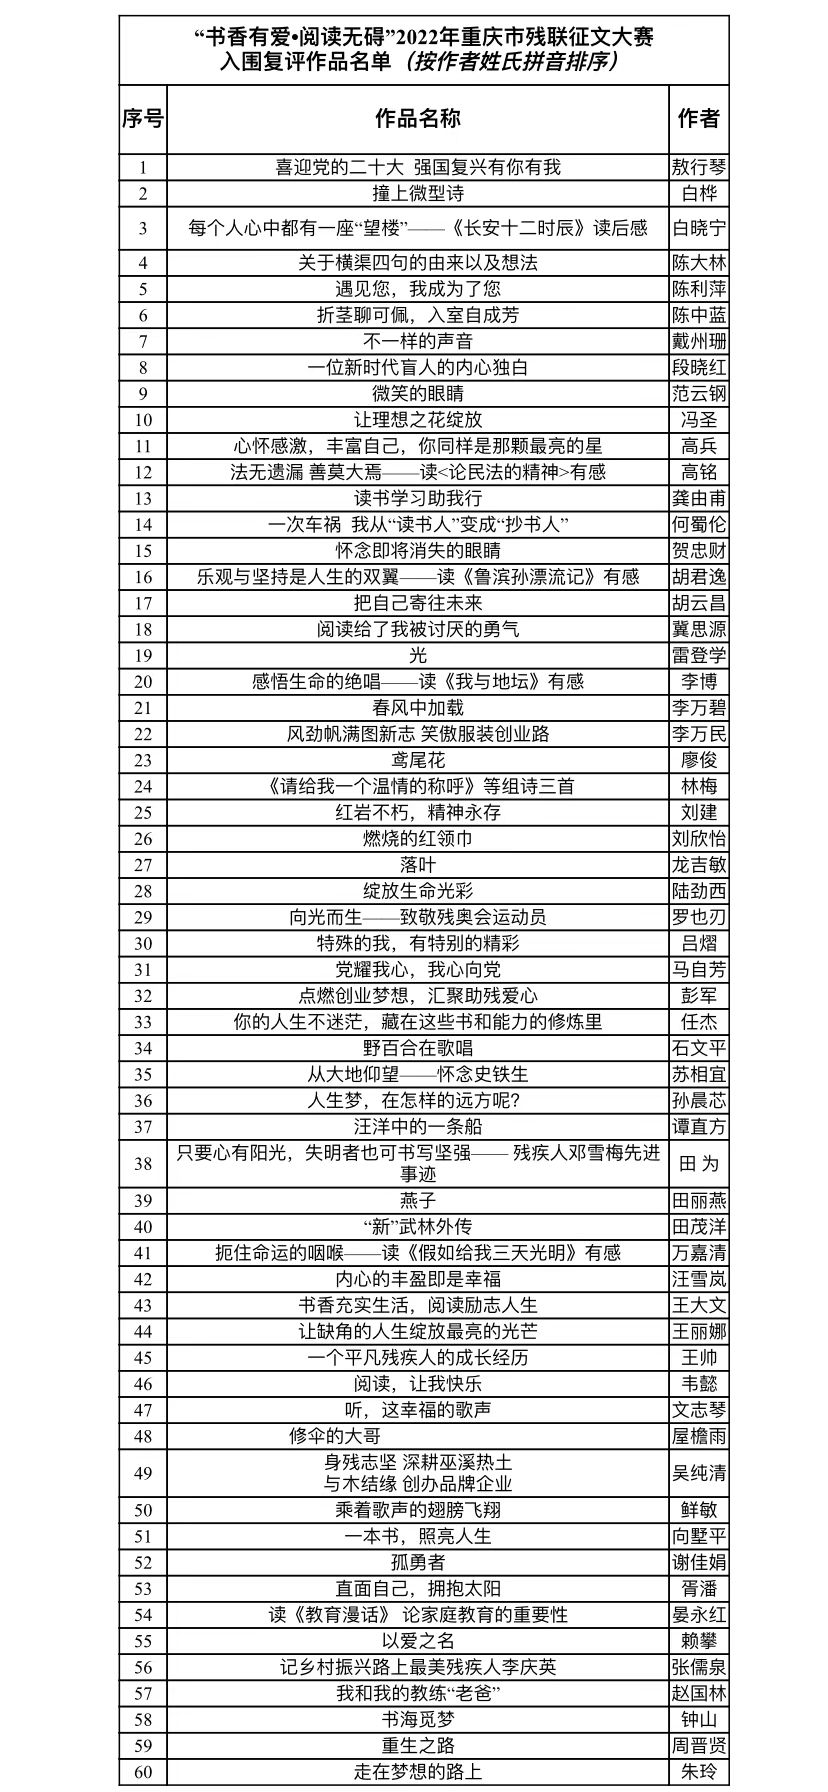 入围复评作品名单。重庆市残联信息中心供图 华龙网发